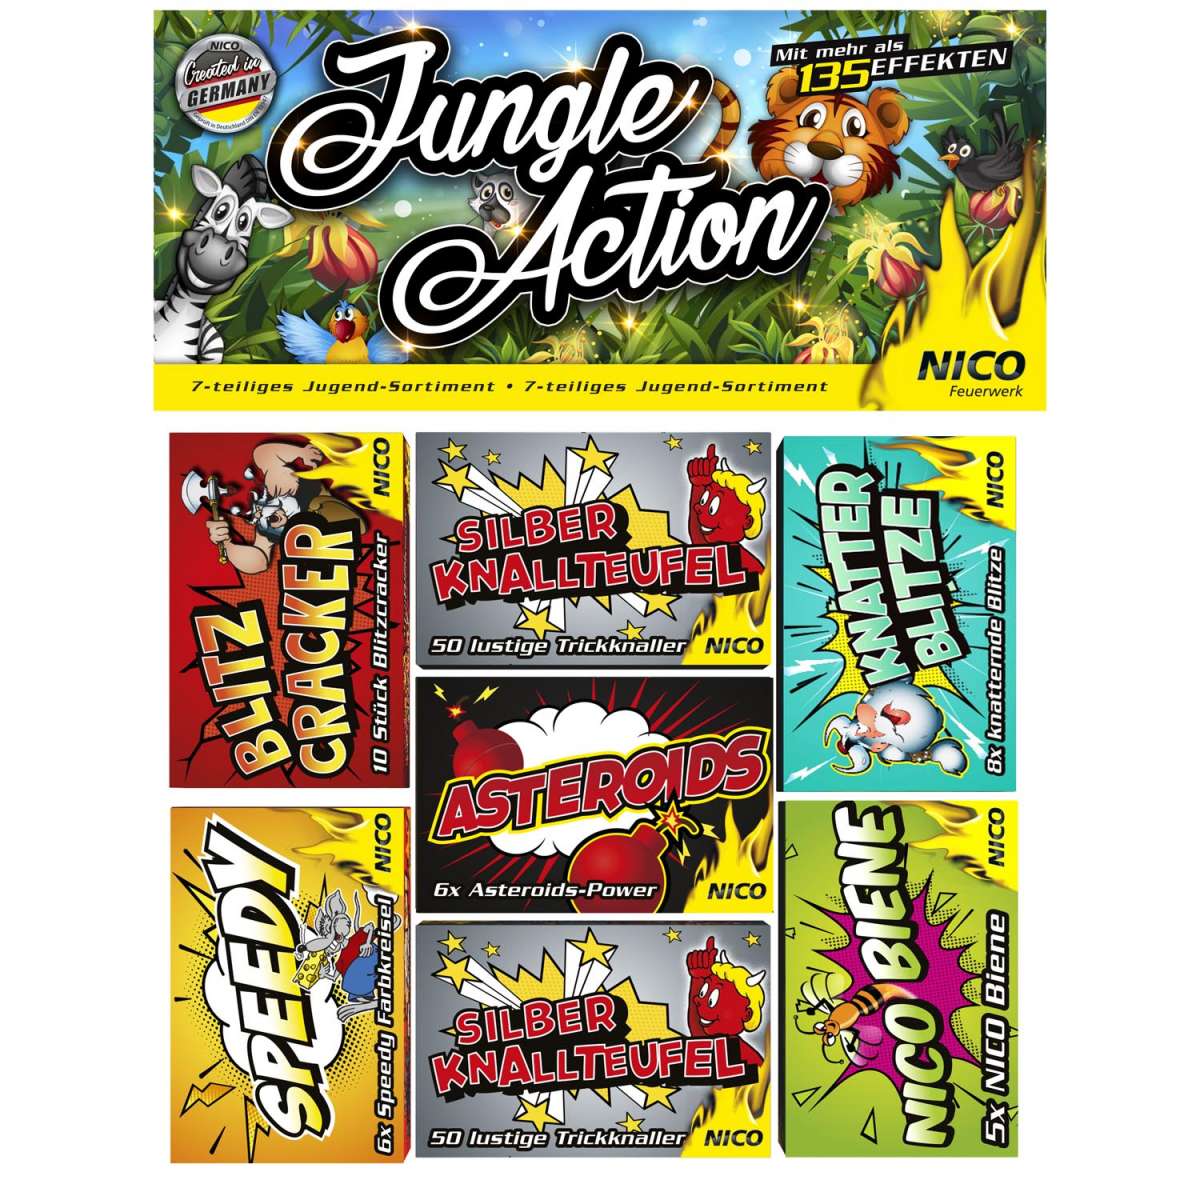 Nico-Jungle-Action-130-Effekte-Jugendsortiment-Ganzjahresfeuerwerk_4ebc46af-5e5e-419f-8764-c55ac408d0d7.jpg